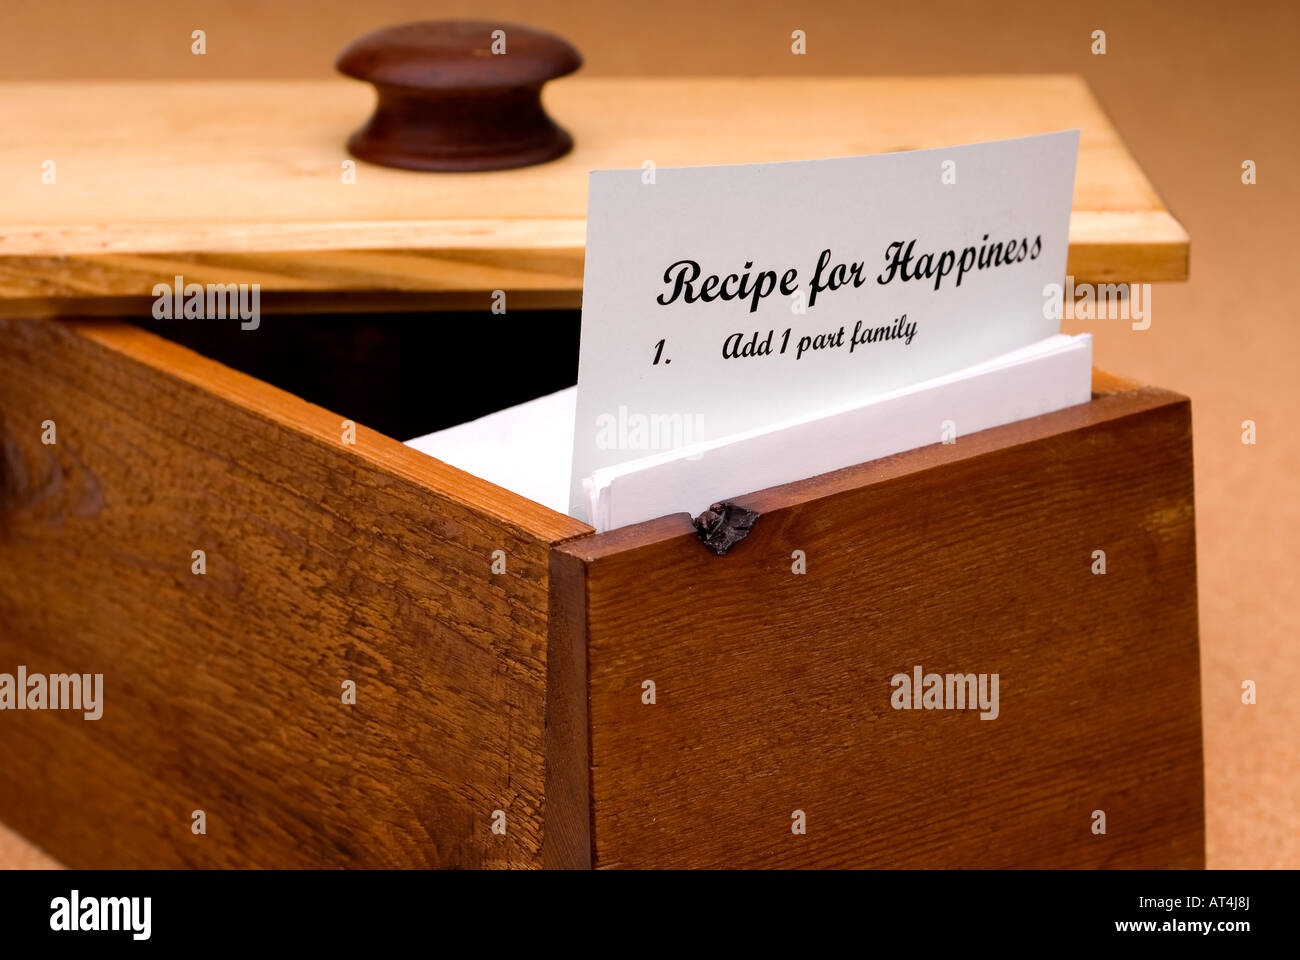 Un concept d'une recette pour le bonheur figurant sur une fiche de recette dans une boîte à recettes en bois Banque D'Images